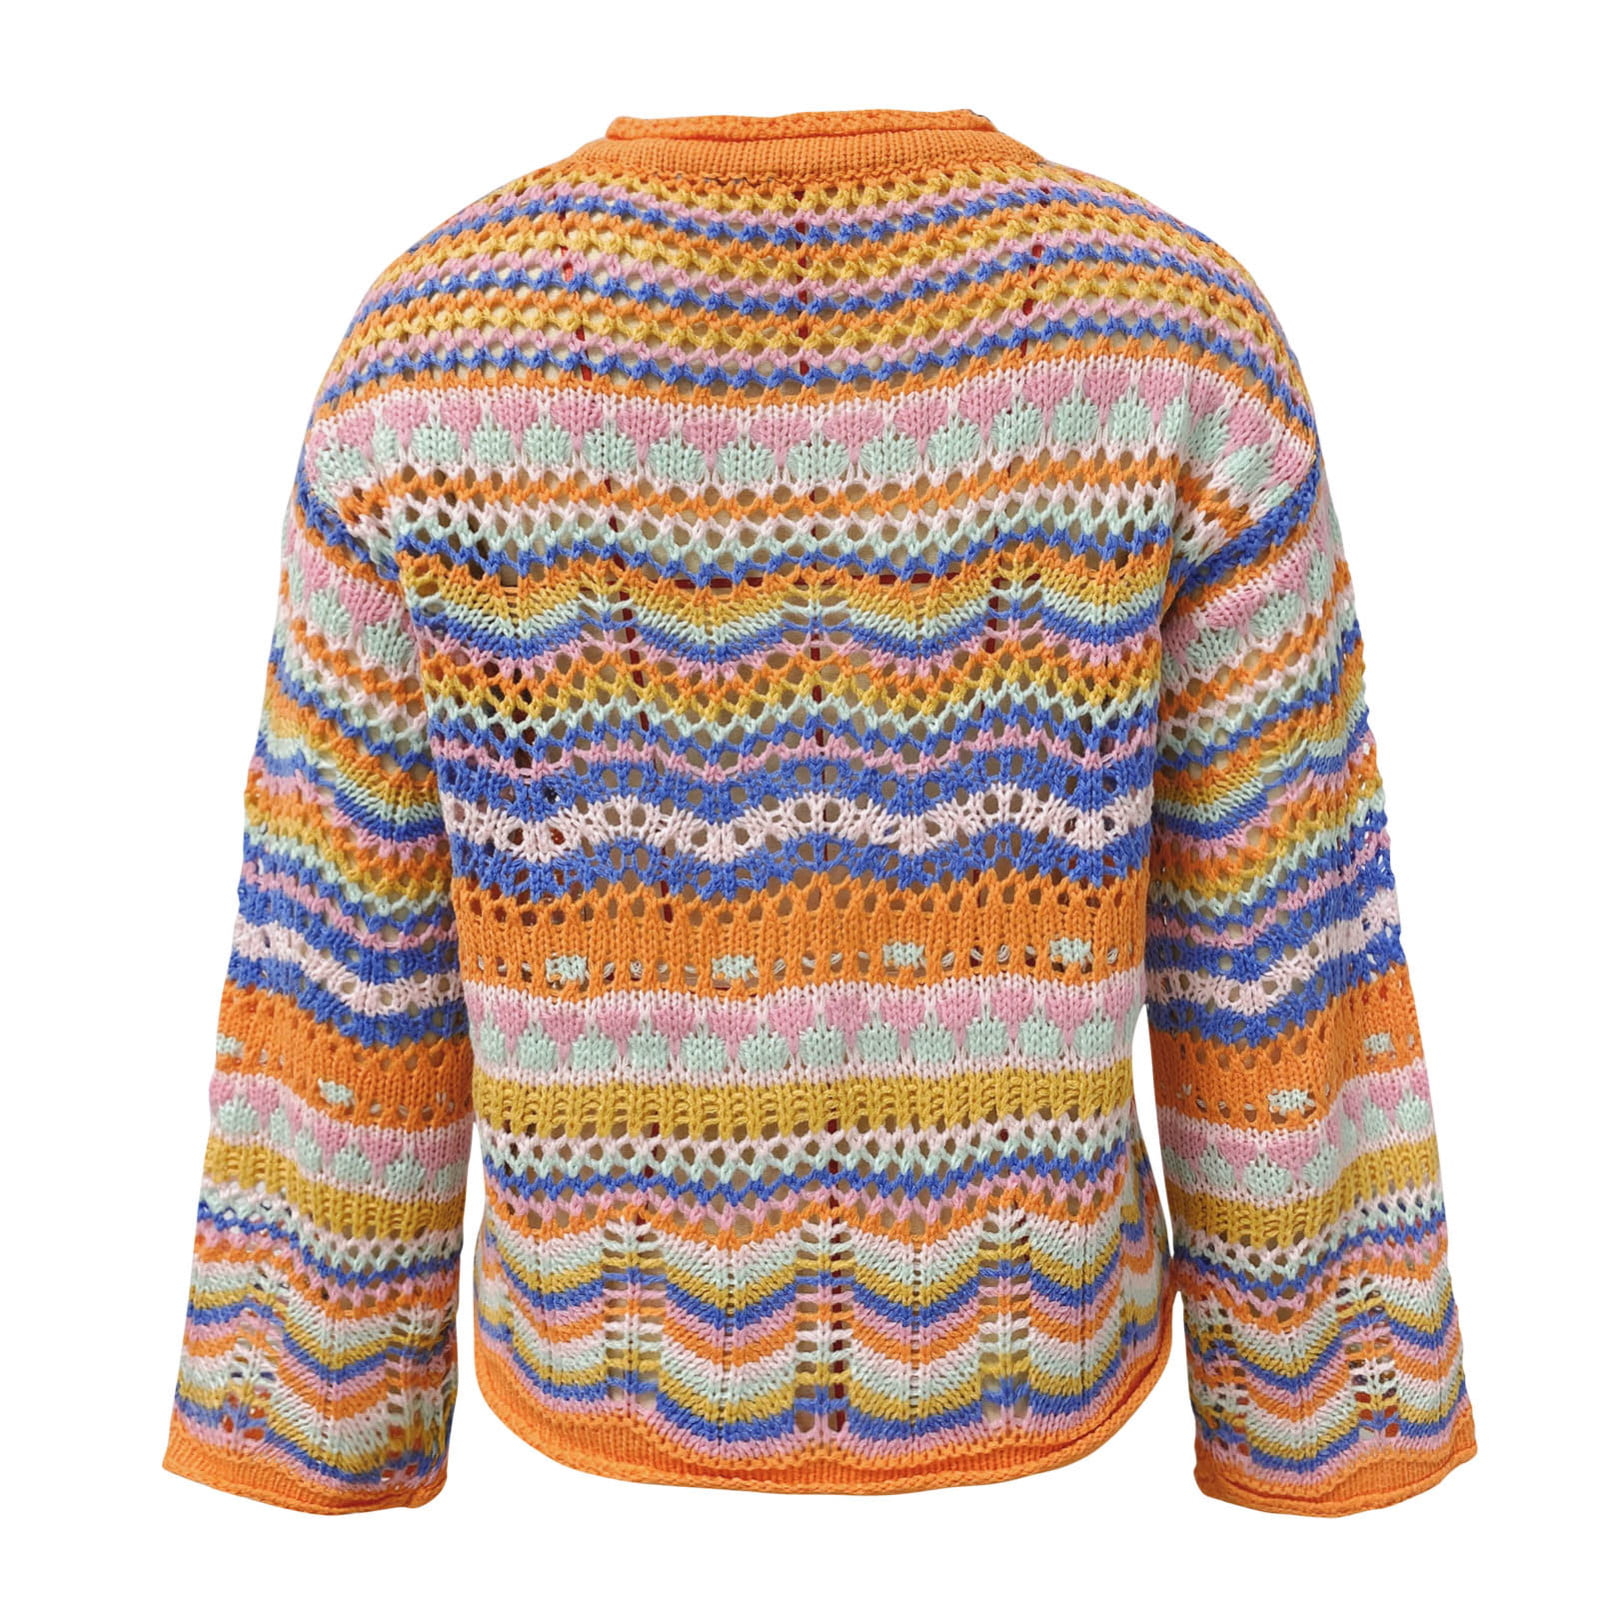 ZHAGHMIN Open Knit Sweater Ladies Striped Sweater Loose Rainbow